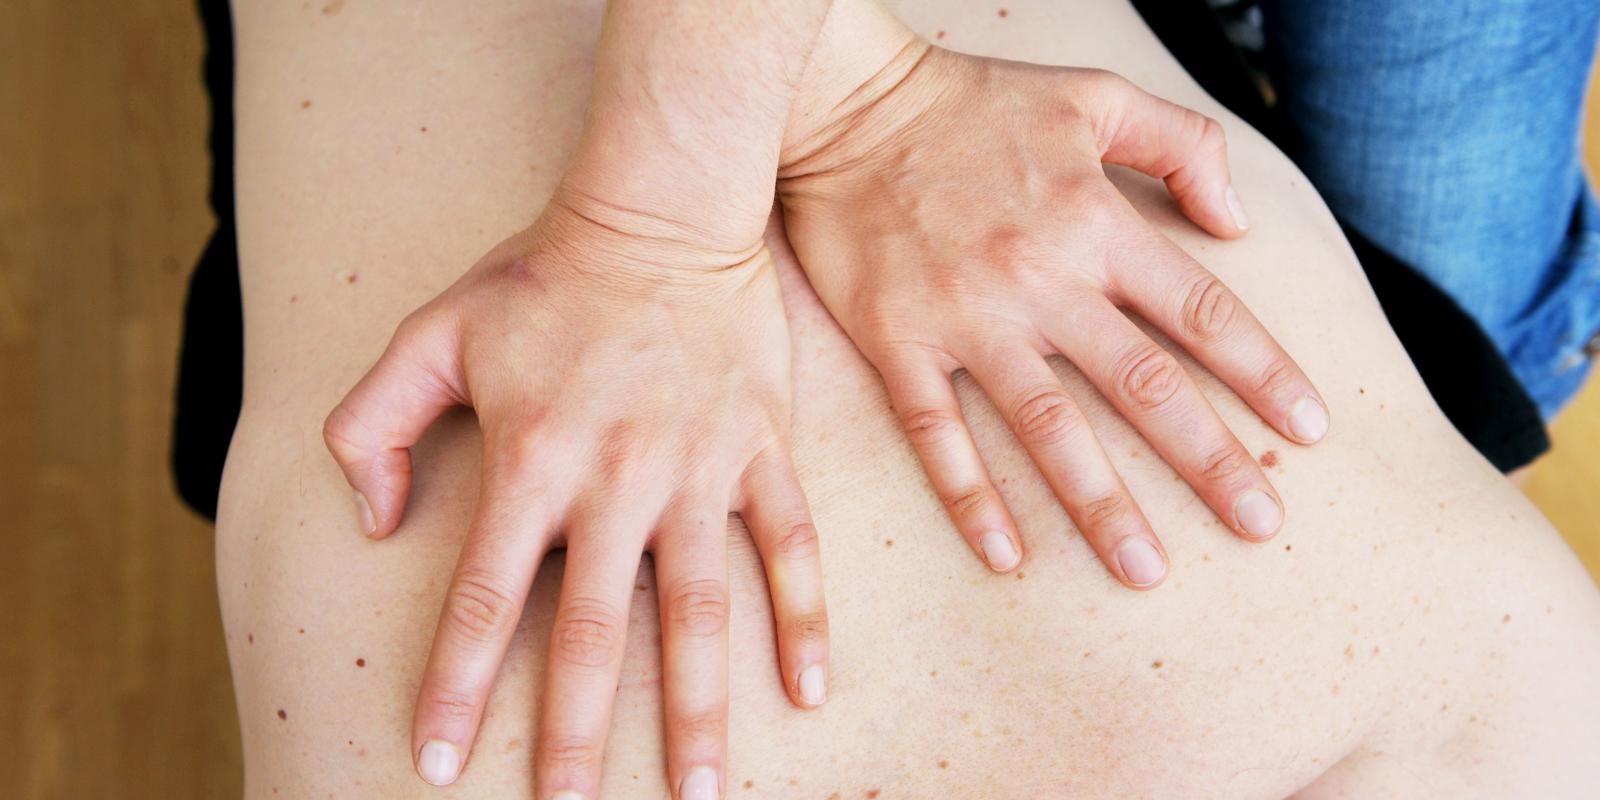 Naprapat trykker hender mot pasientens rygg.